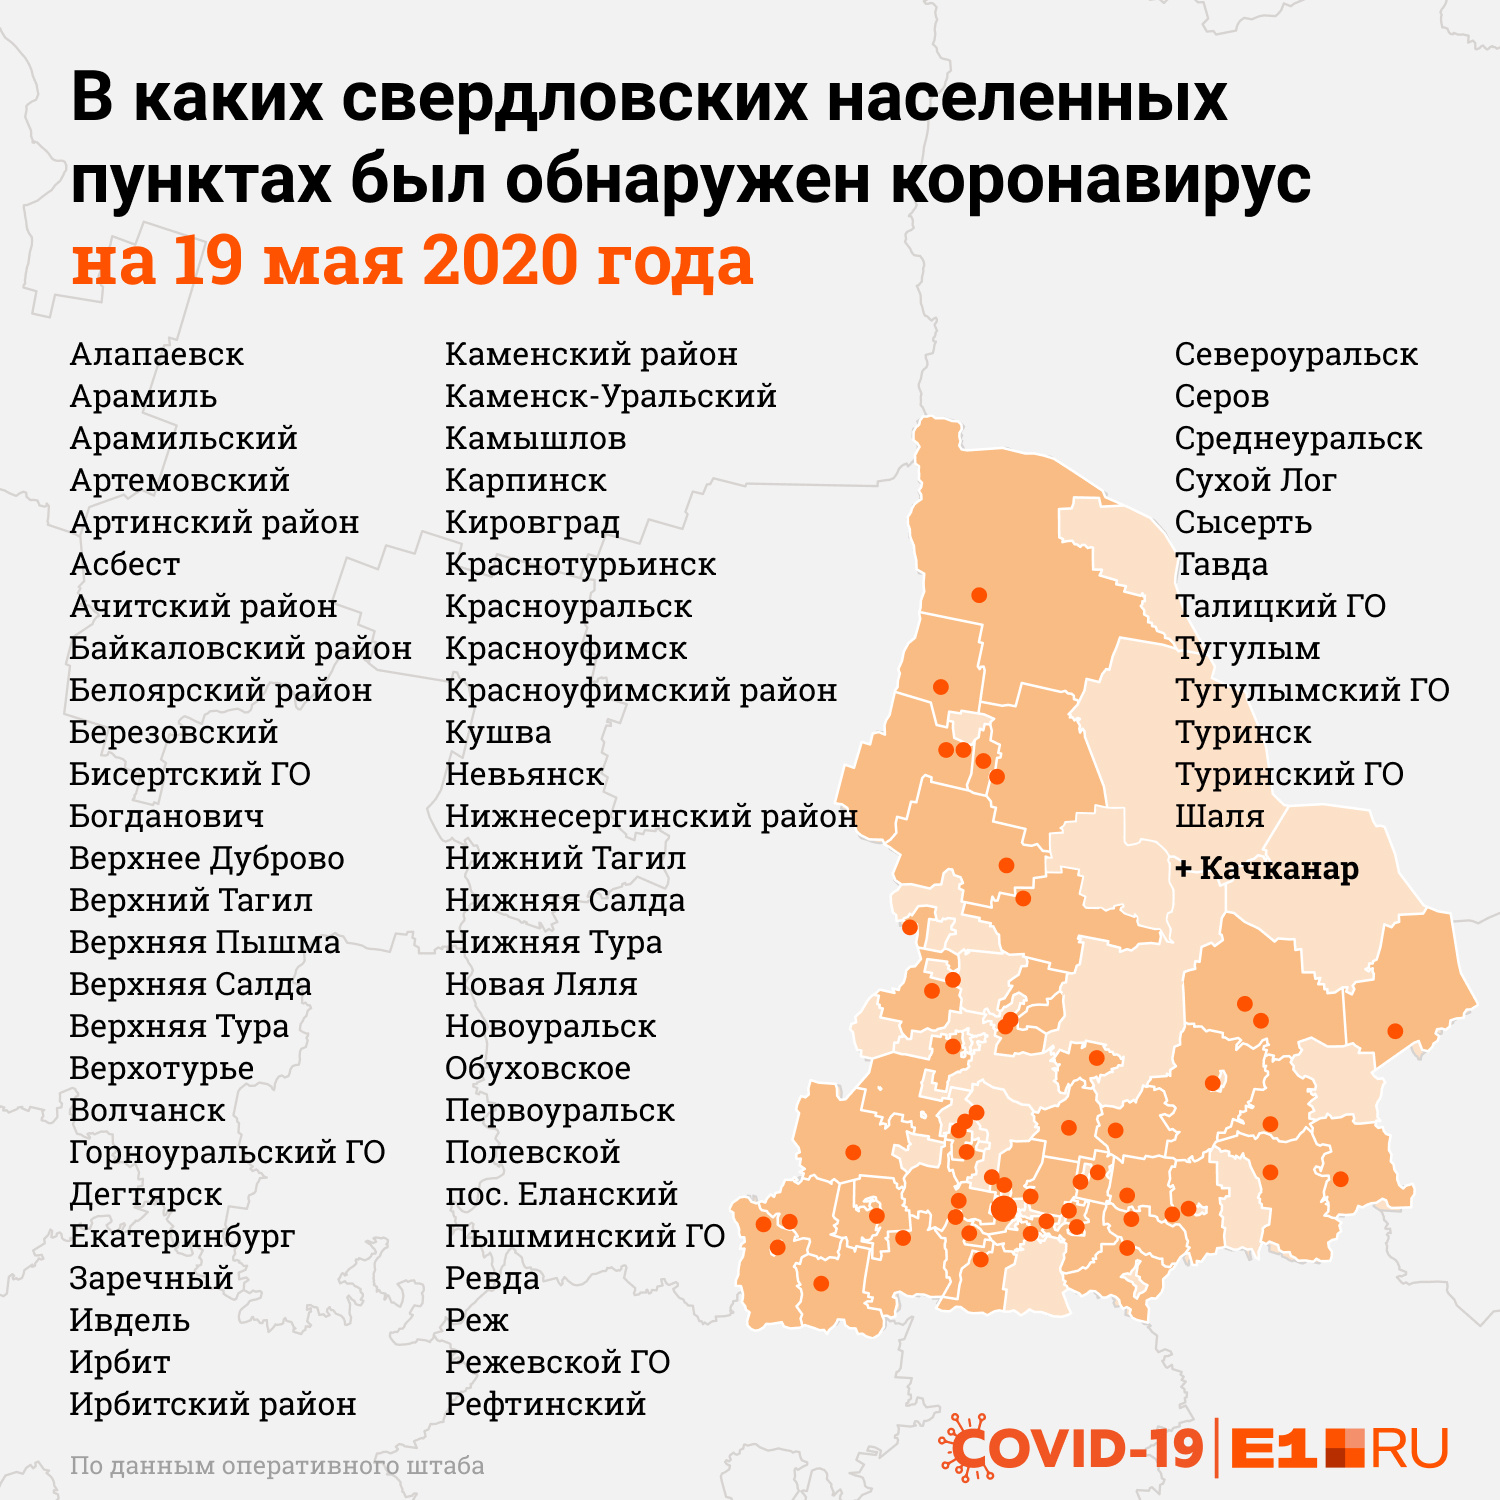 Качканар пополнил «коронавирусную» карту Свердловской области